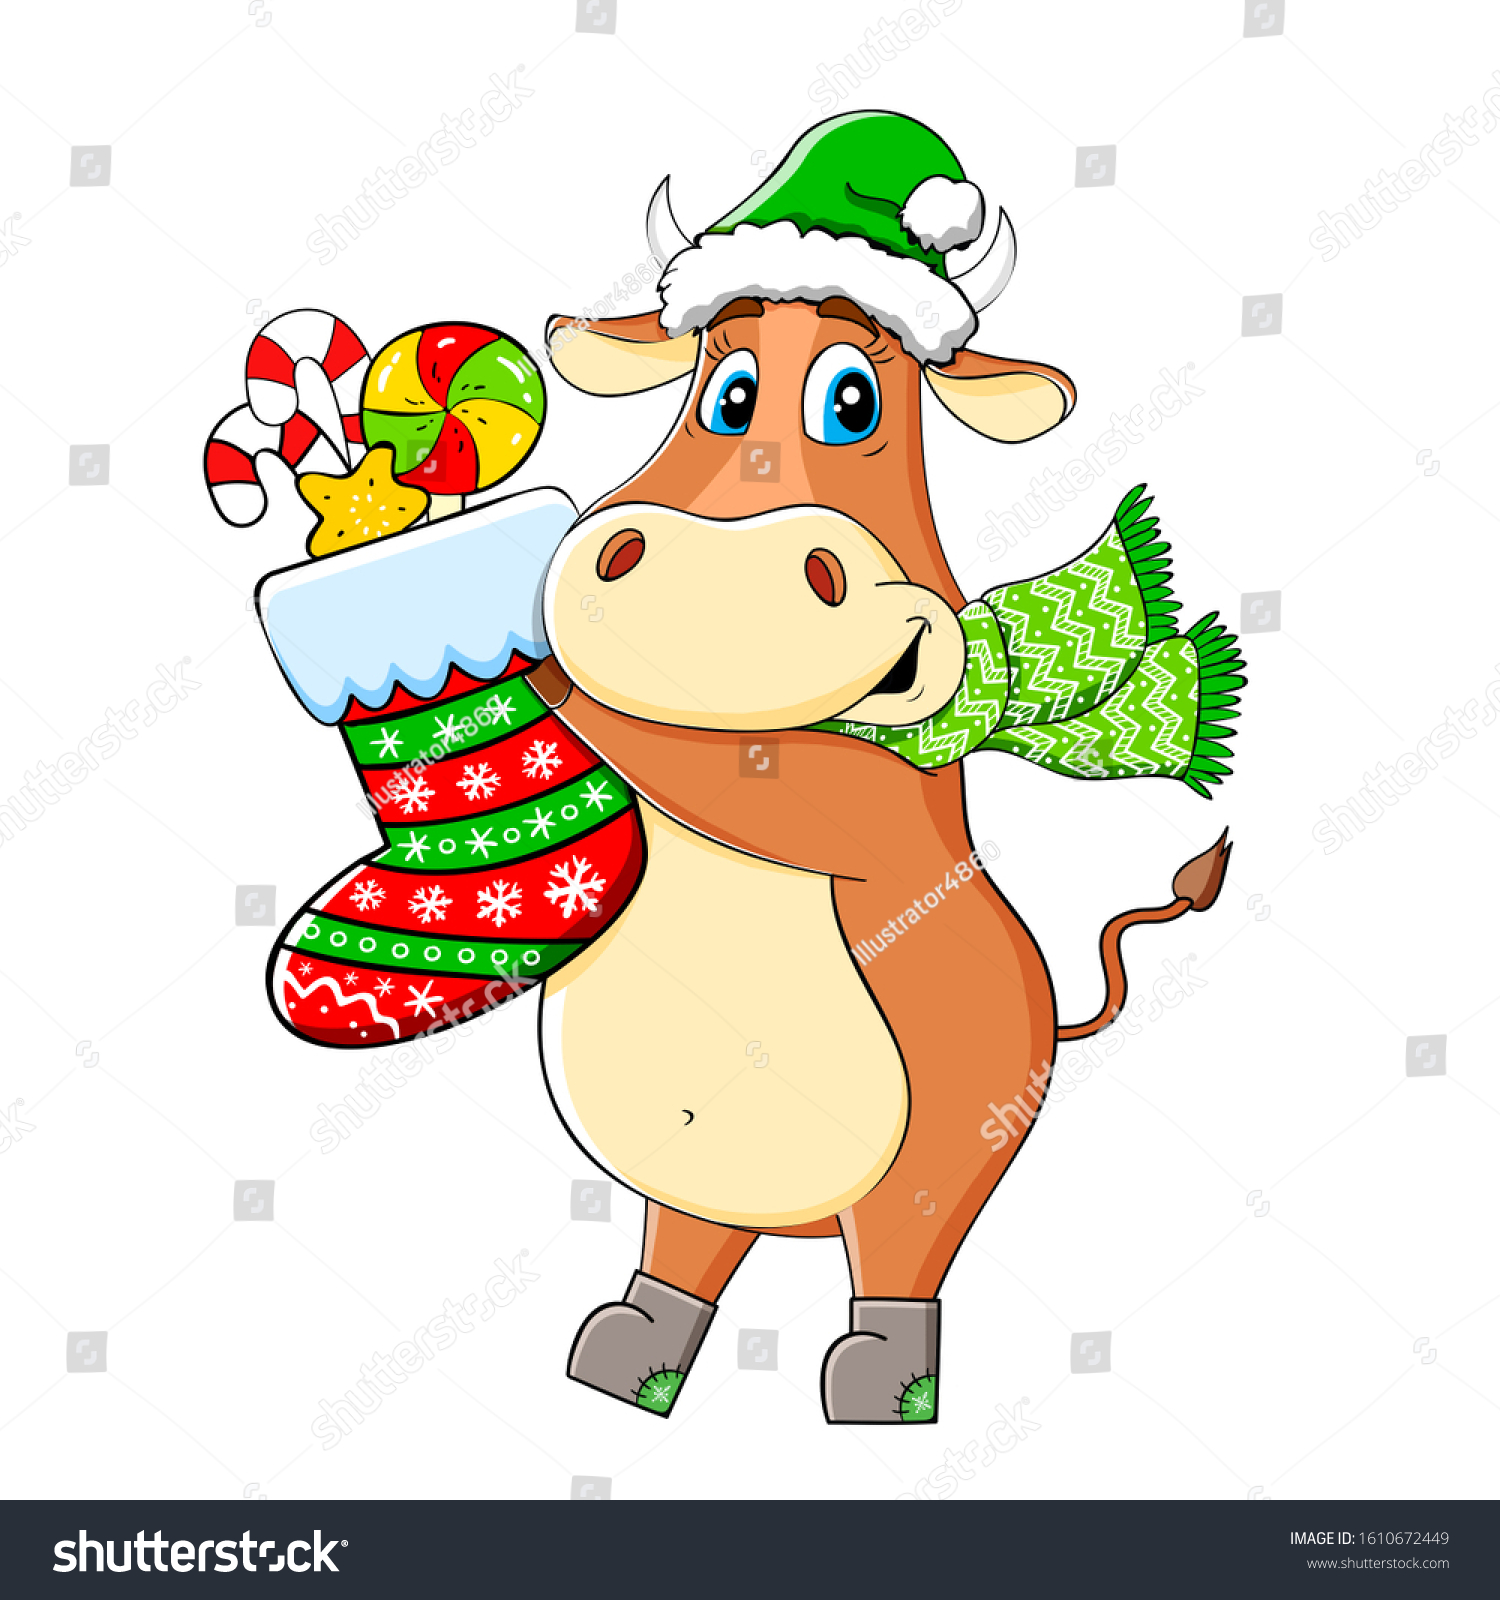 Новогодняя открытка с изображением коровы